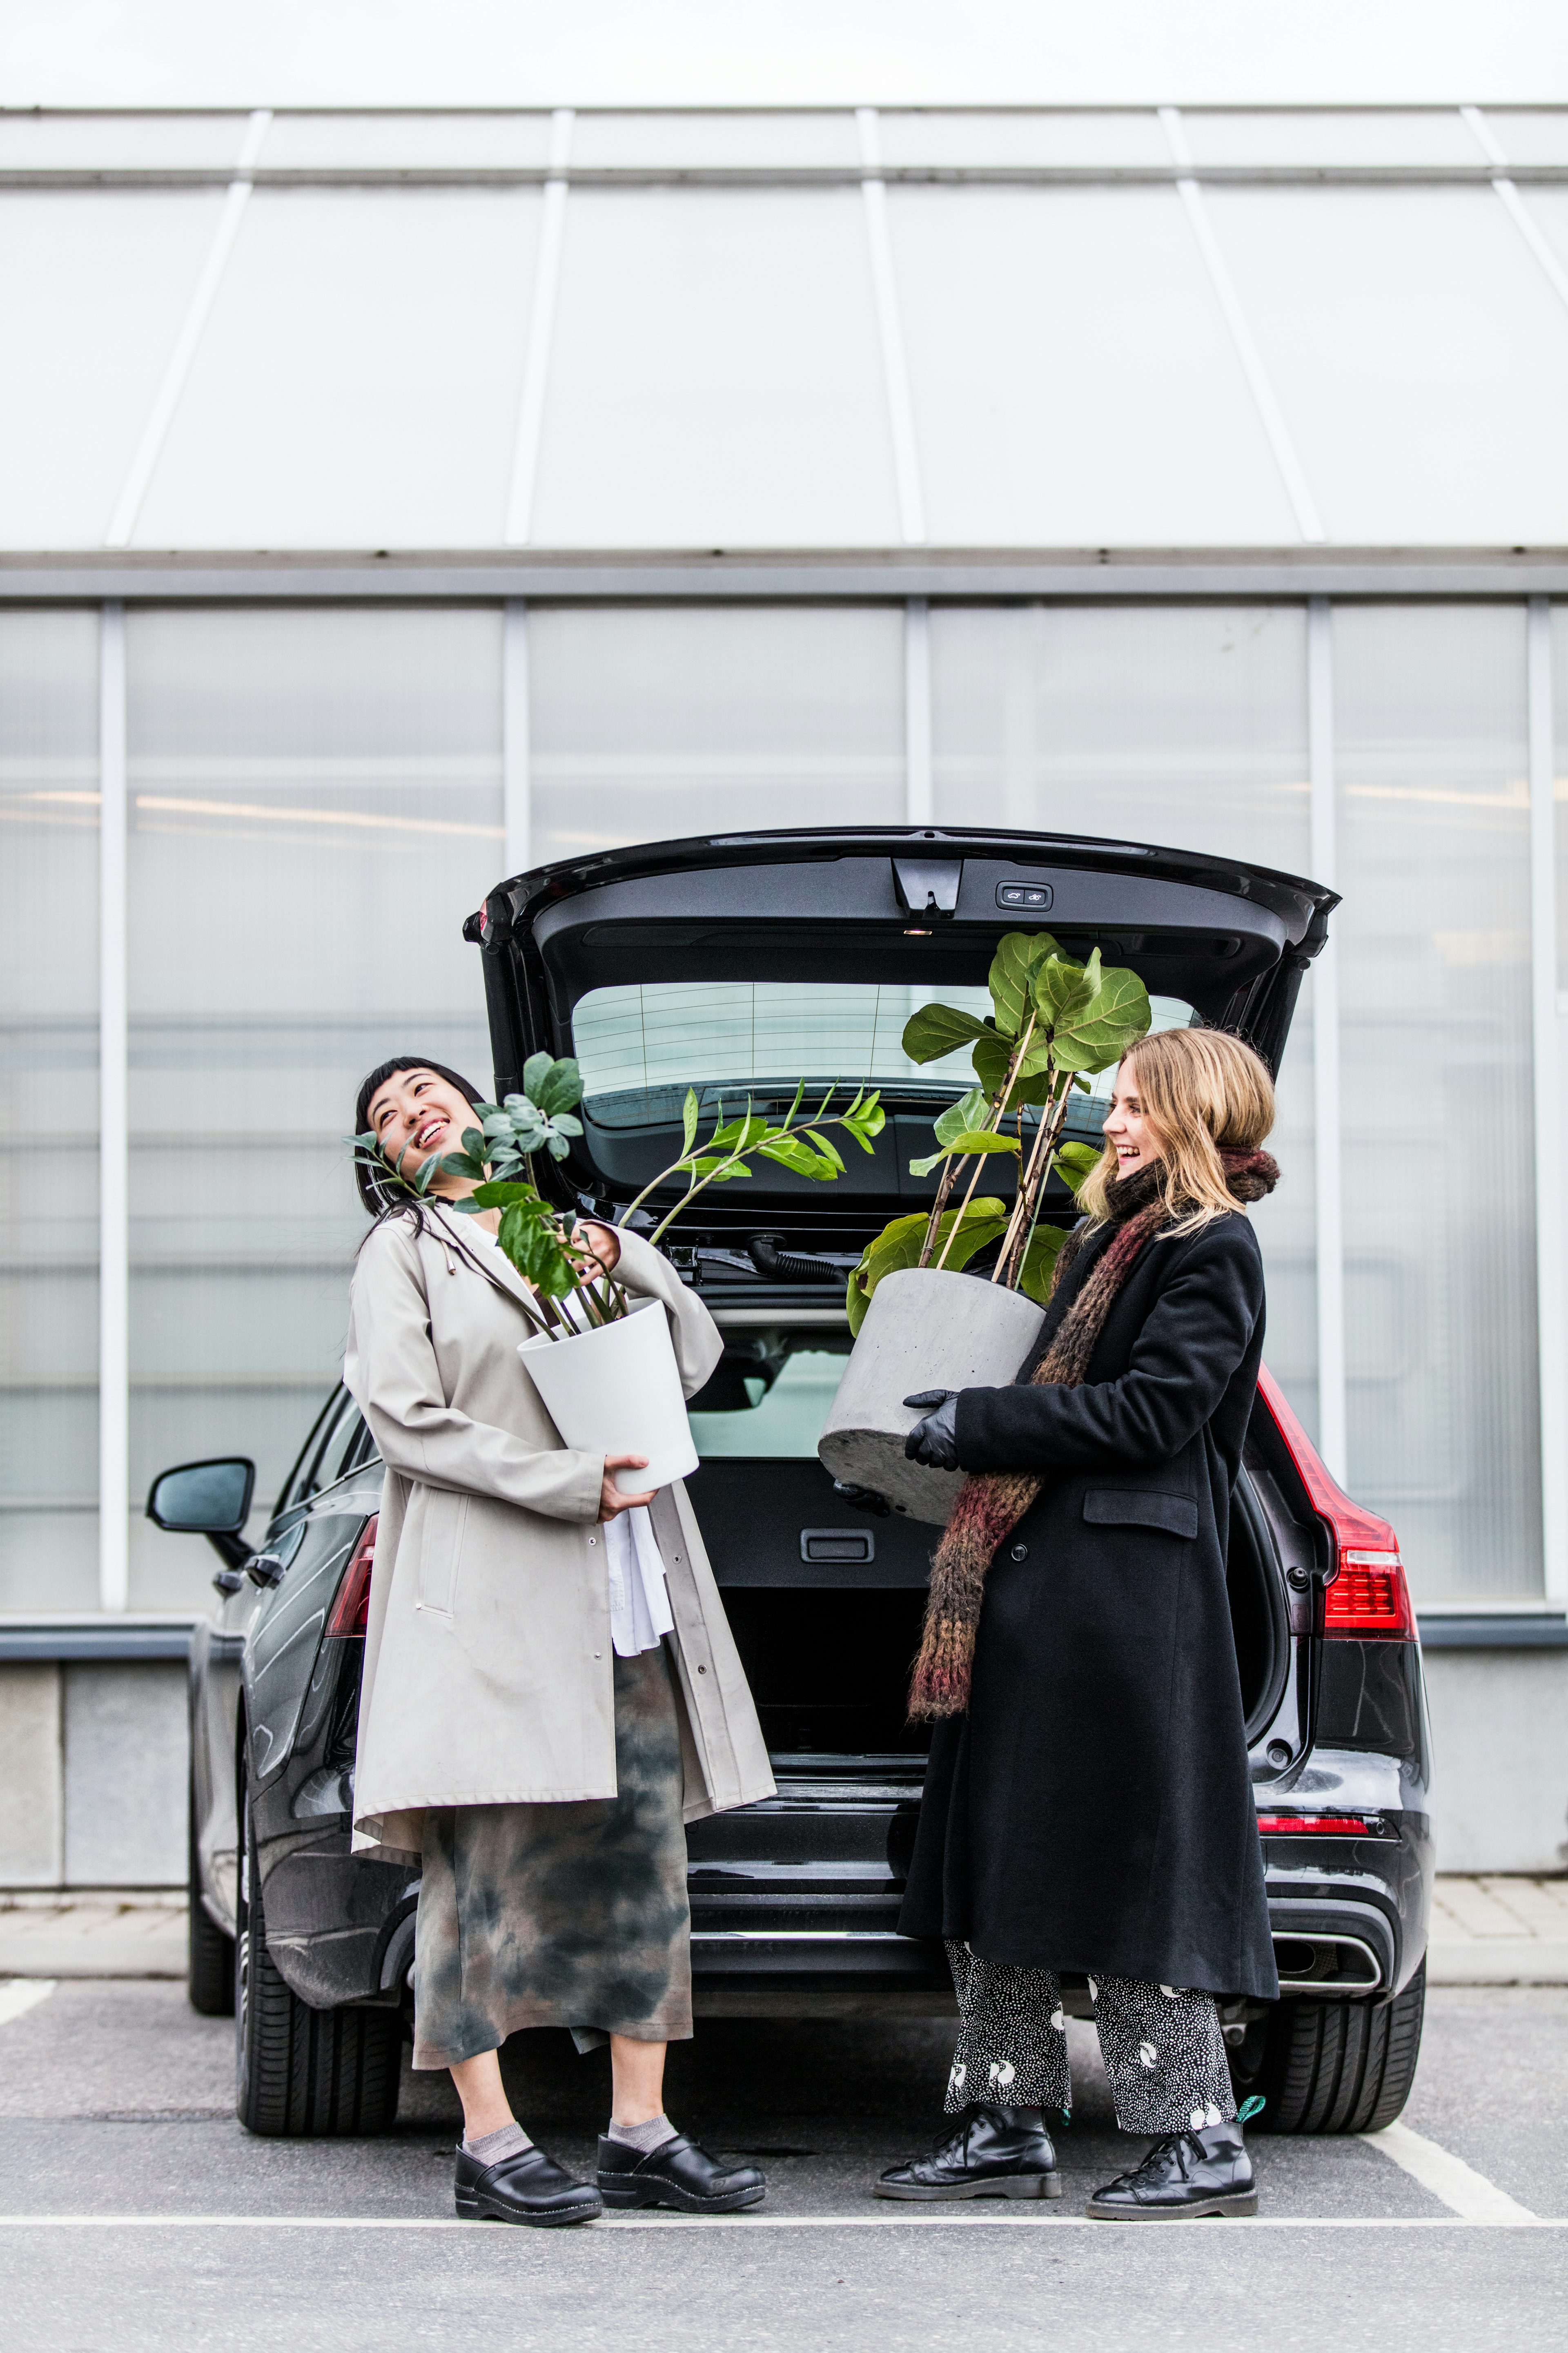 Två kvinnor lastar ur växter ur bakluckan på en Volvo.